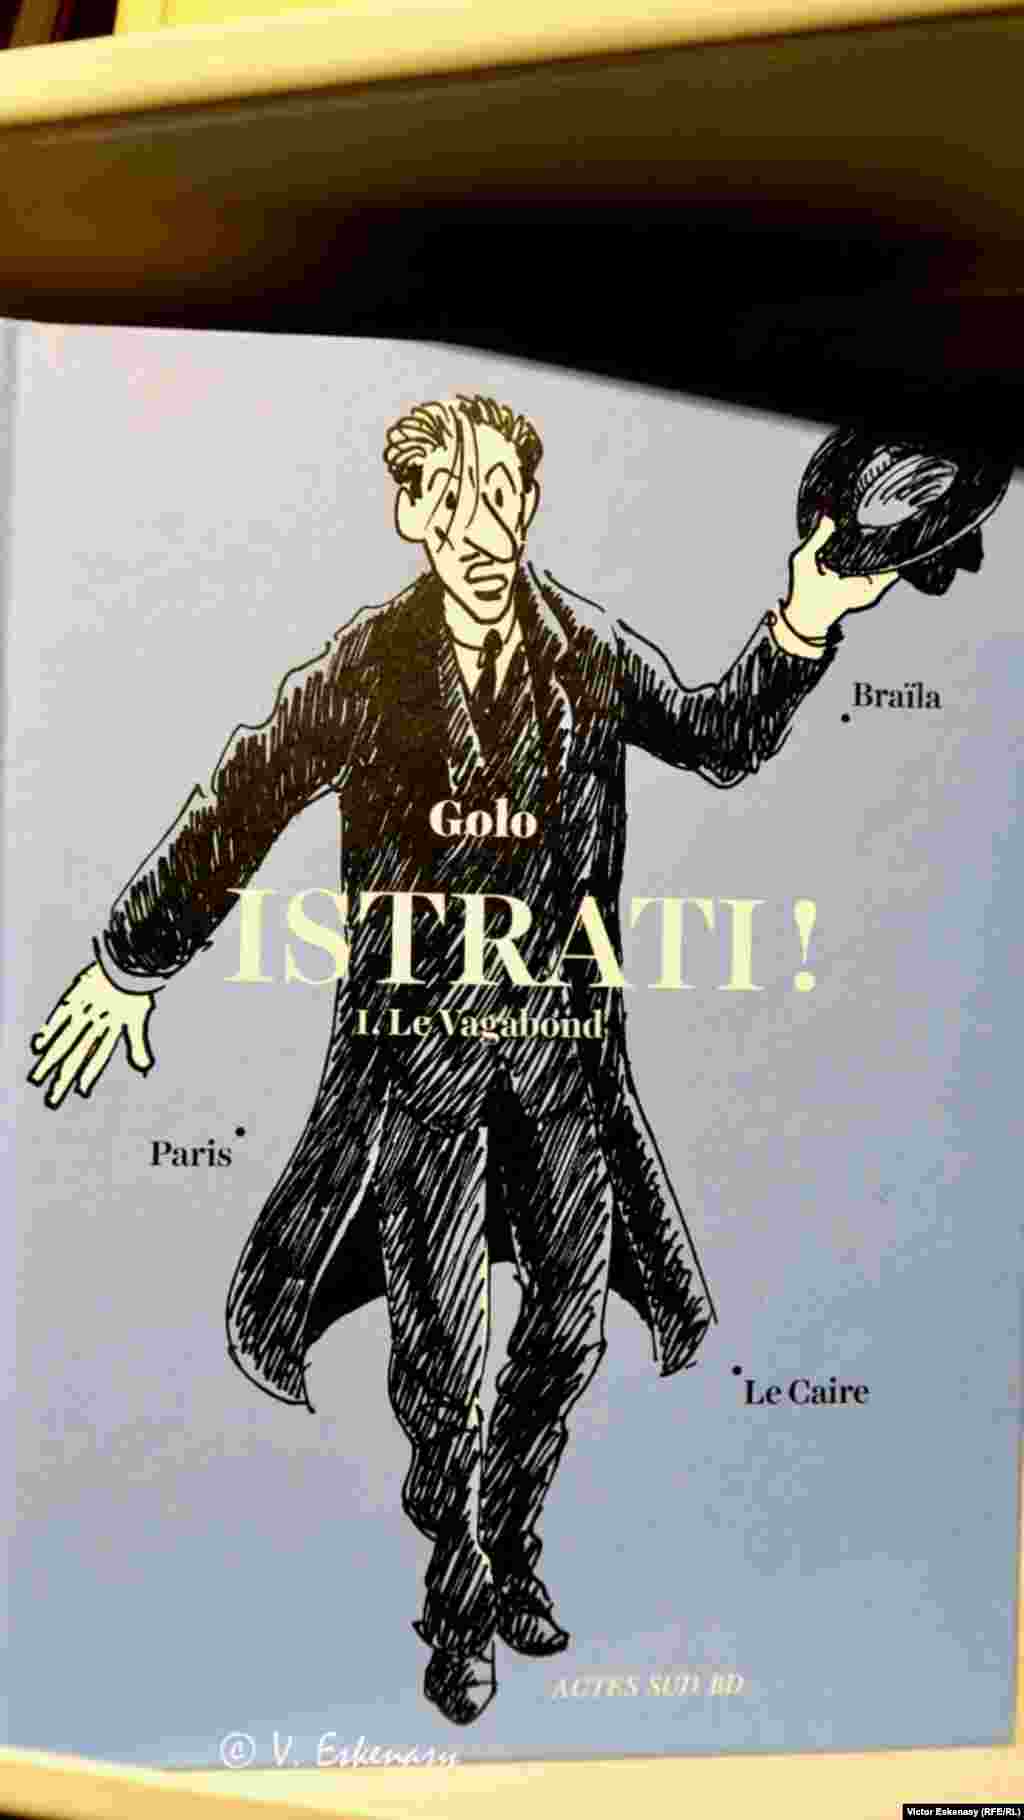 O surpriză, istoriile lui Panait Istrati ilustrate de Golo, într-un volum BD